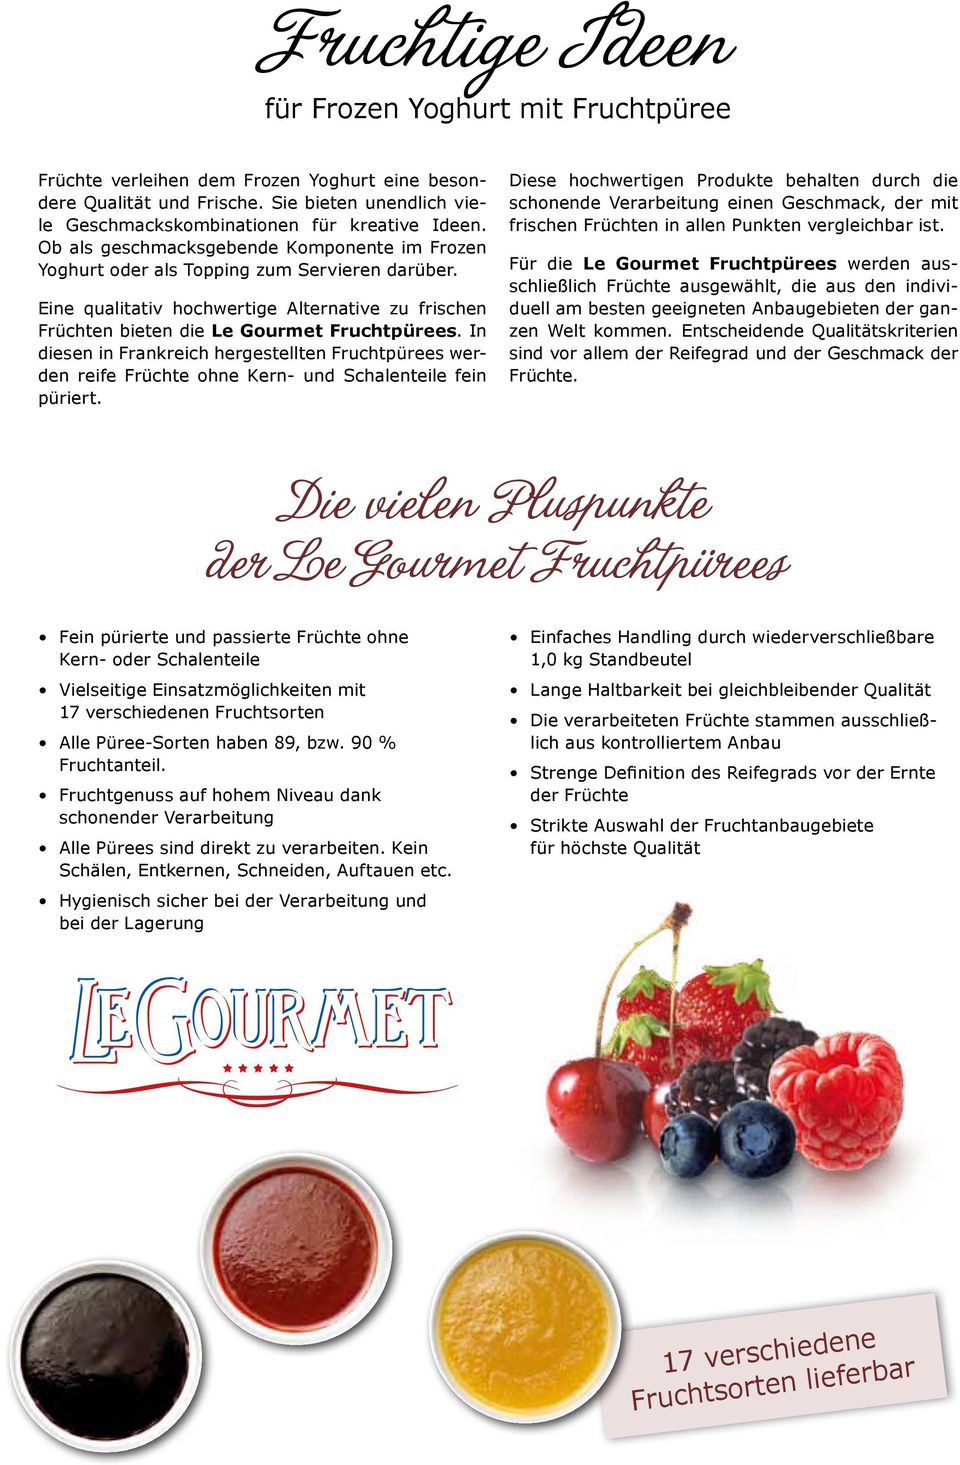 In diesen in Frankreich hergestellten Fruchtpürees werden reife Früchte ohne Kern- und Schalenteile fein püriert.